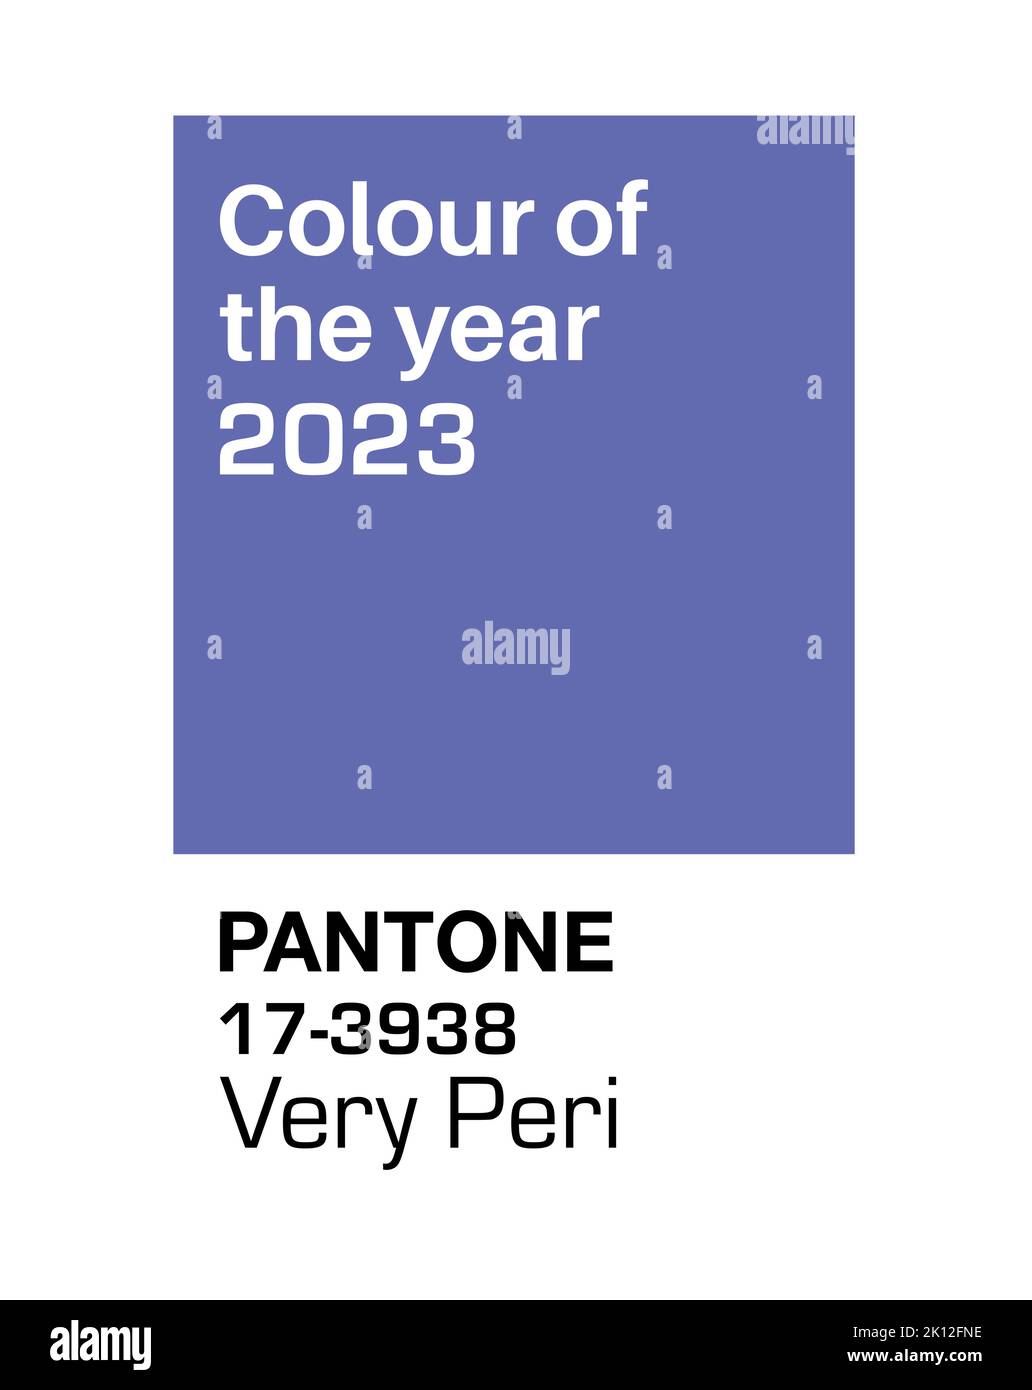 SWINDON, Großbritannien - 15. September 2022: Pantone Veri Peri Trending Color of the Year 2022. Farbmuster, Vektorgrafik Stock Vektor